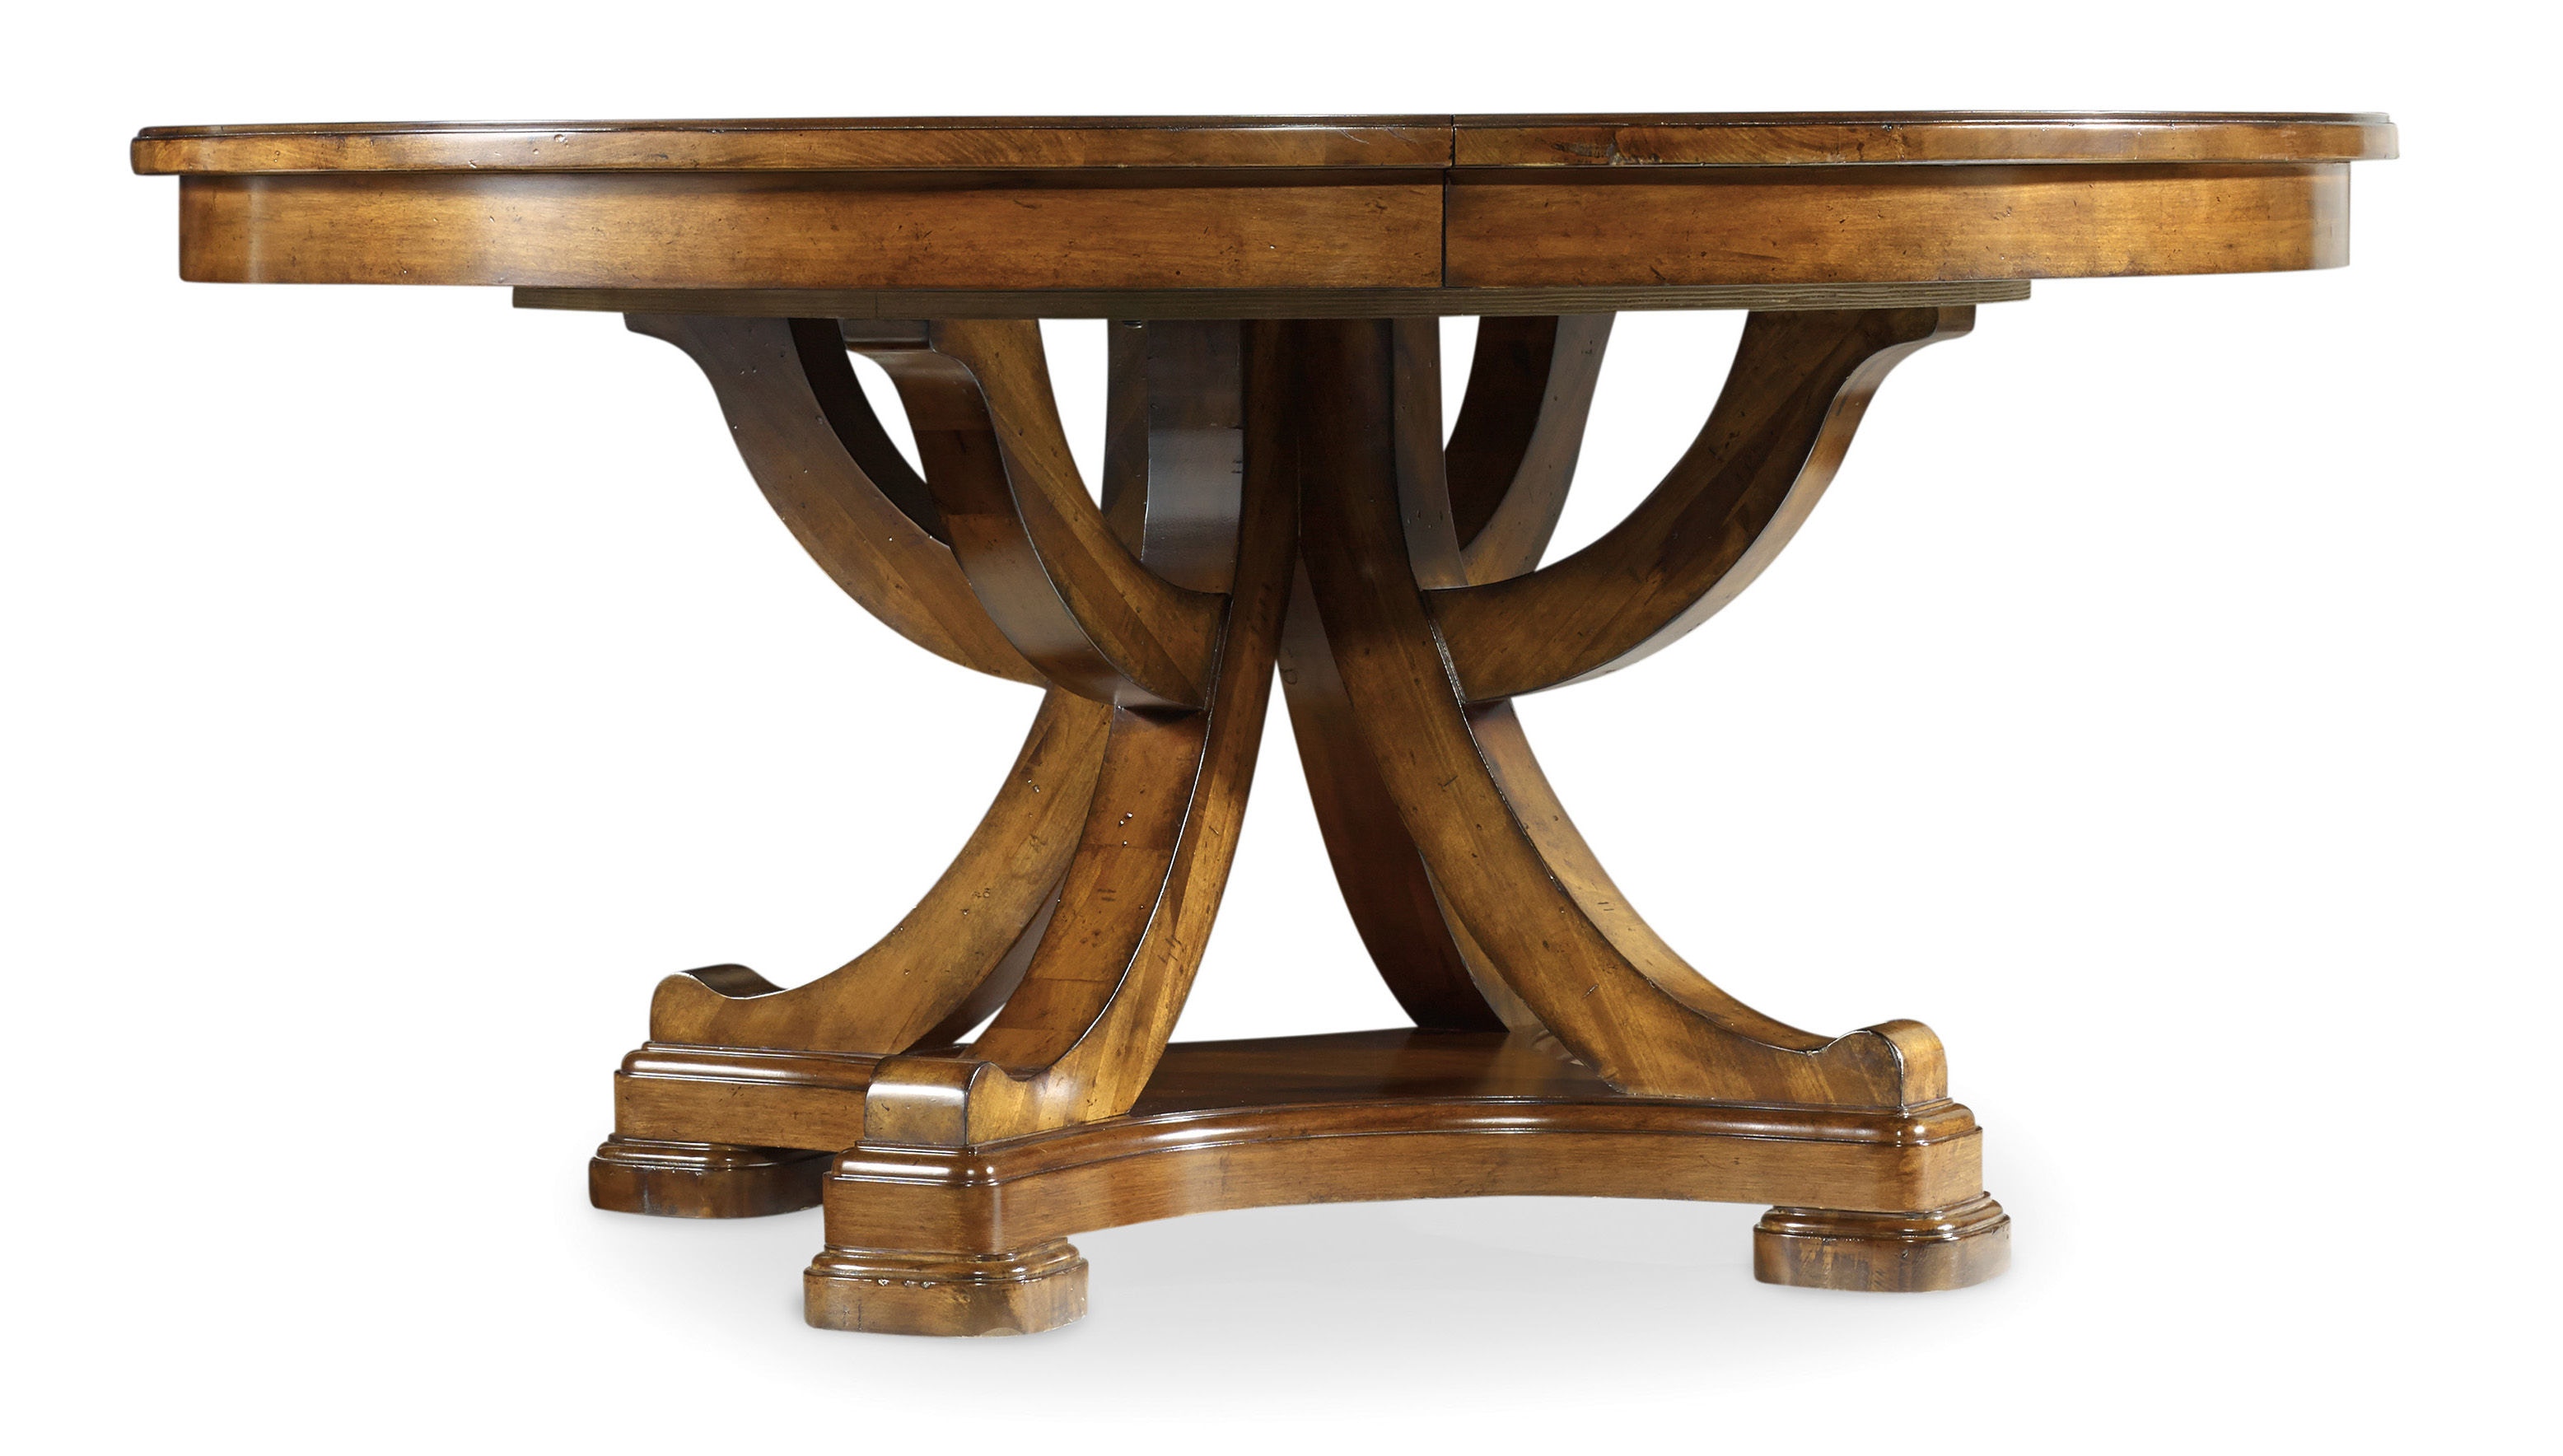 60 inch round pedestal kitchen table